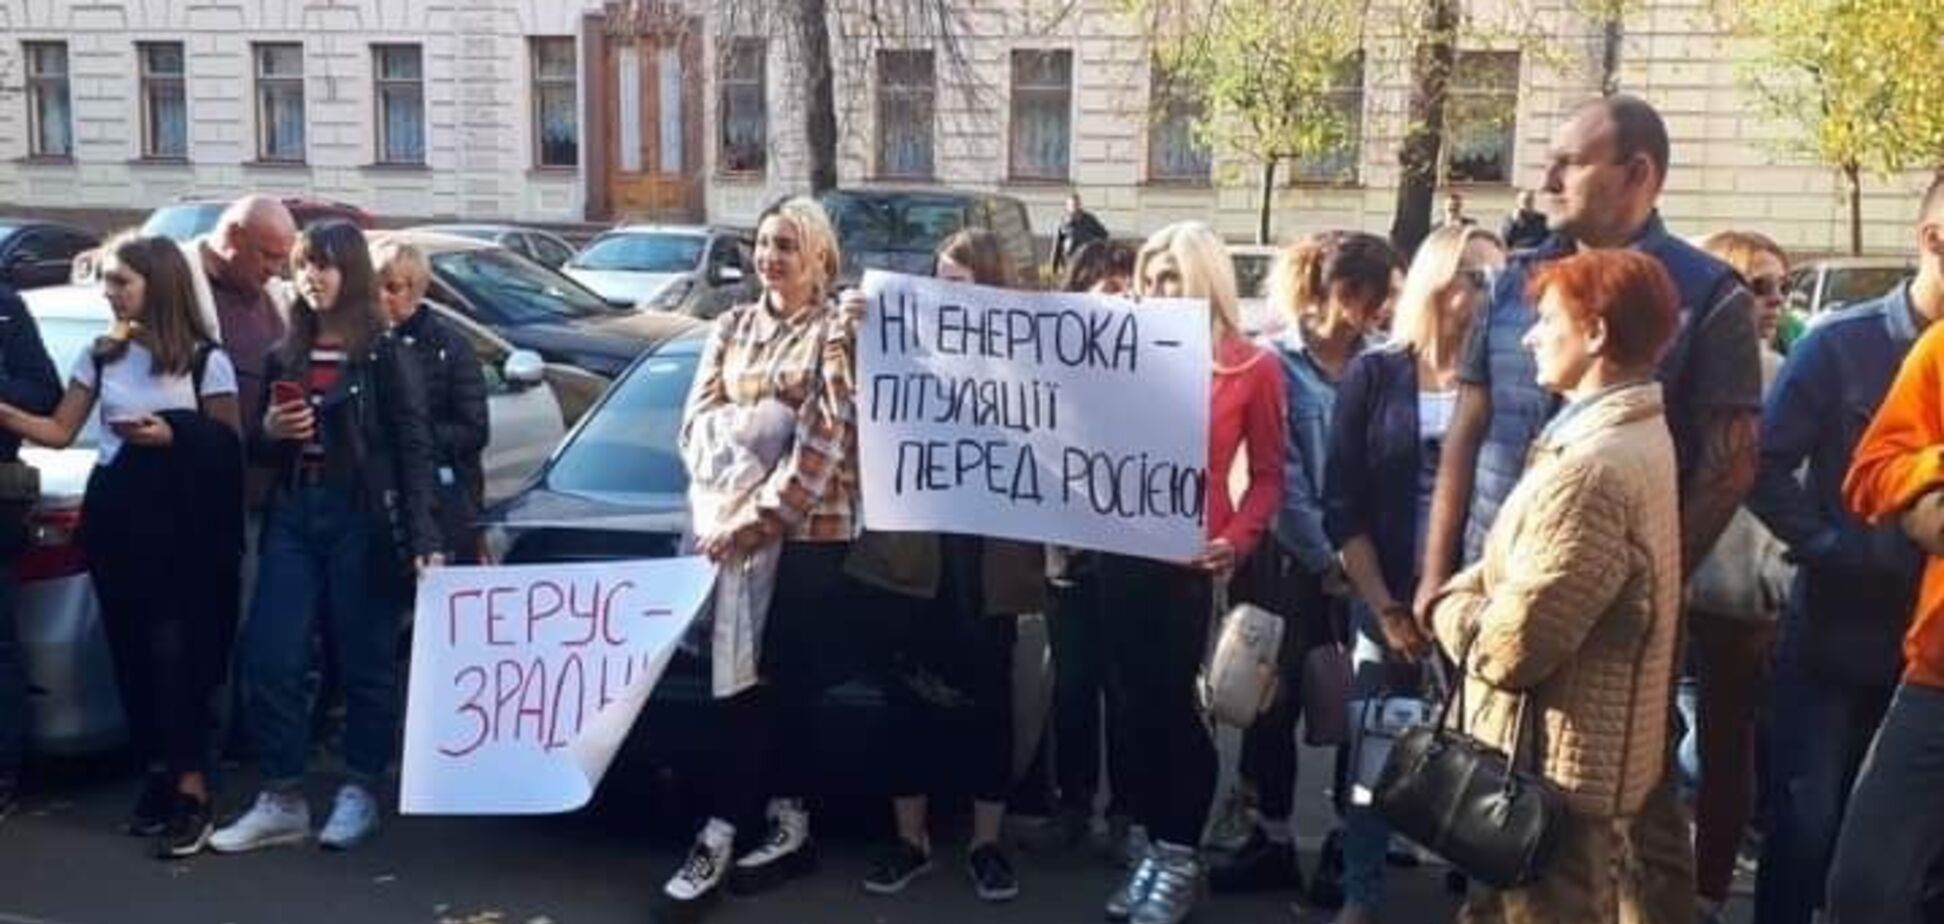 Активисты требуют отставки главы комитета Рады по энергетике Андрея Геруса